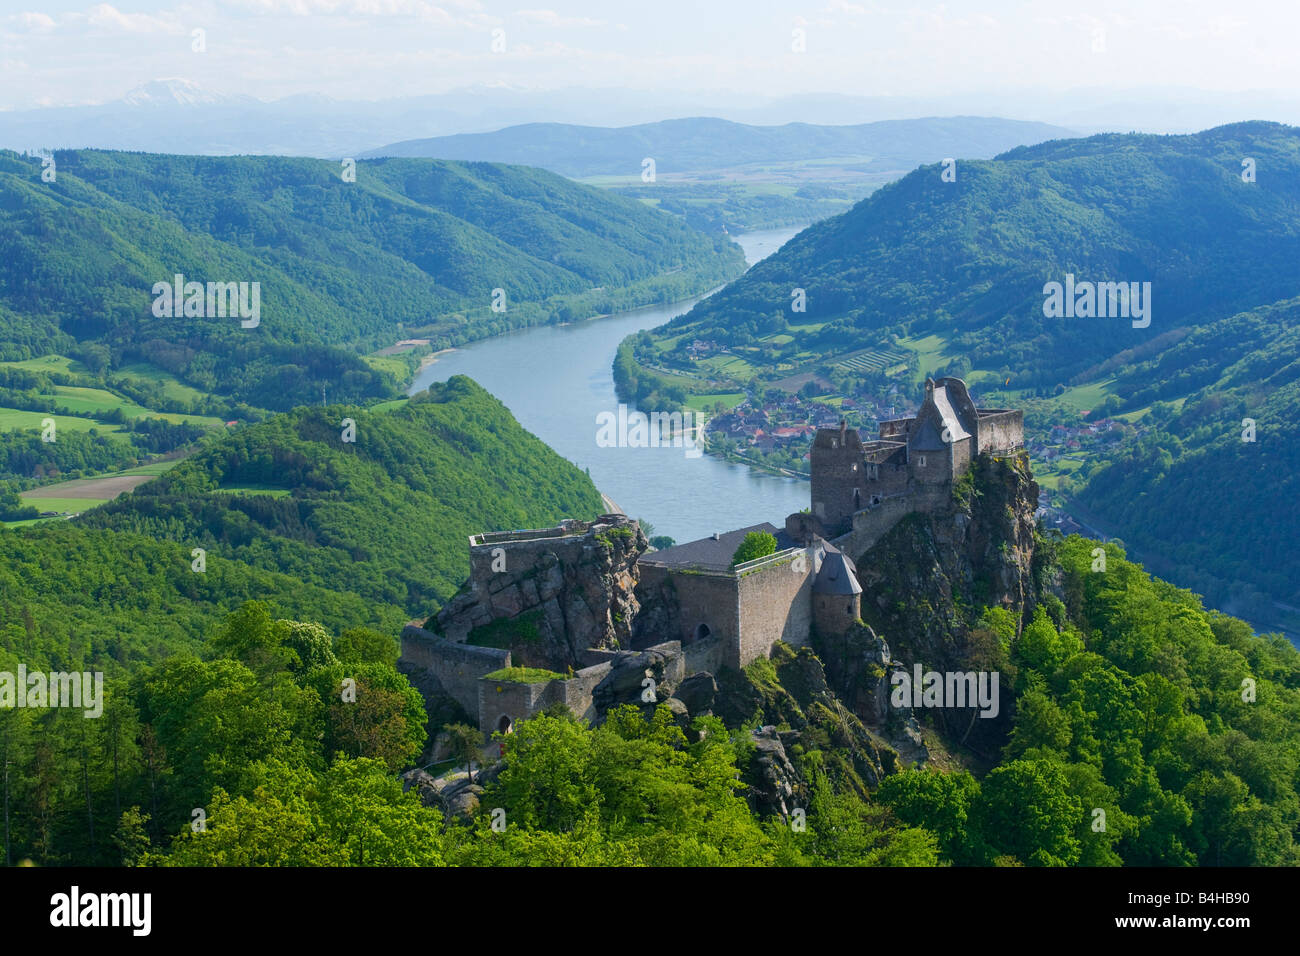 Anzeigen der alten Burgruine auf Hügel Aggstein Burg Dunkelsteiner Wald Schoenbuehel Donau Fluß Wachau Österreich Niederösterreich Stockfoto